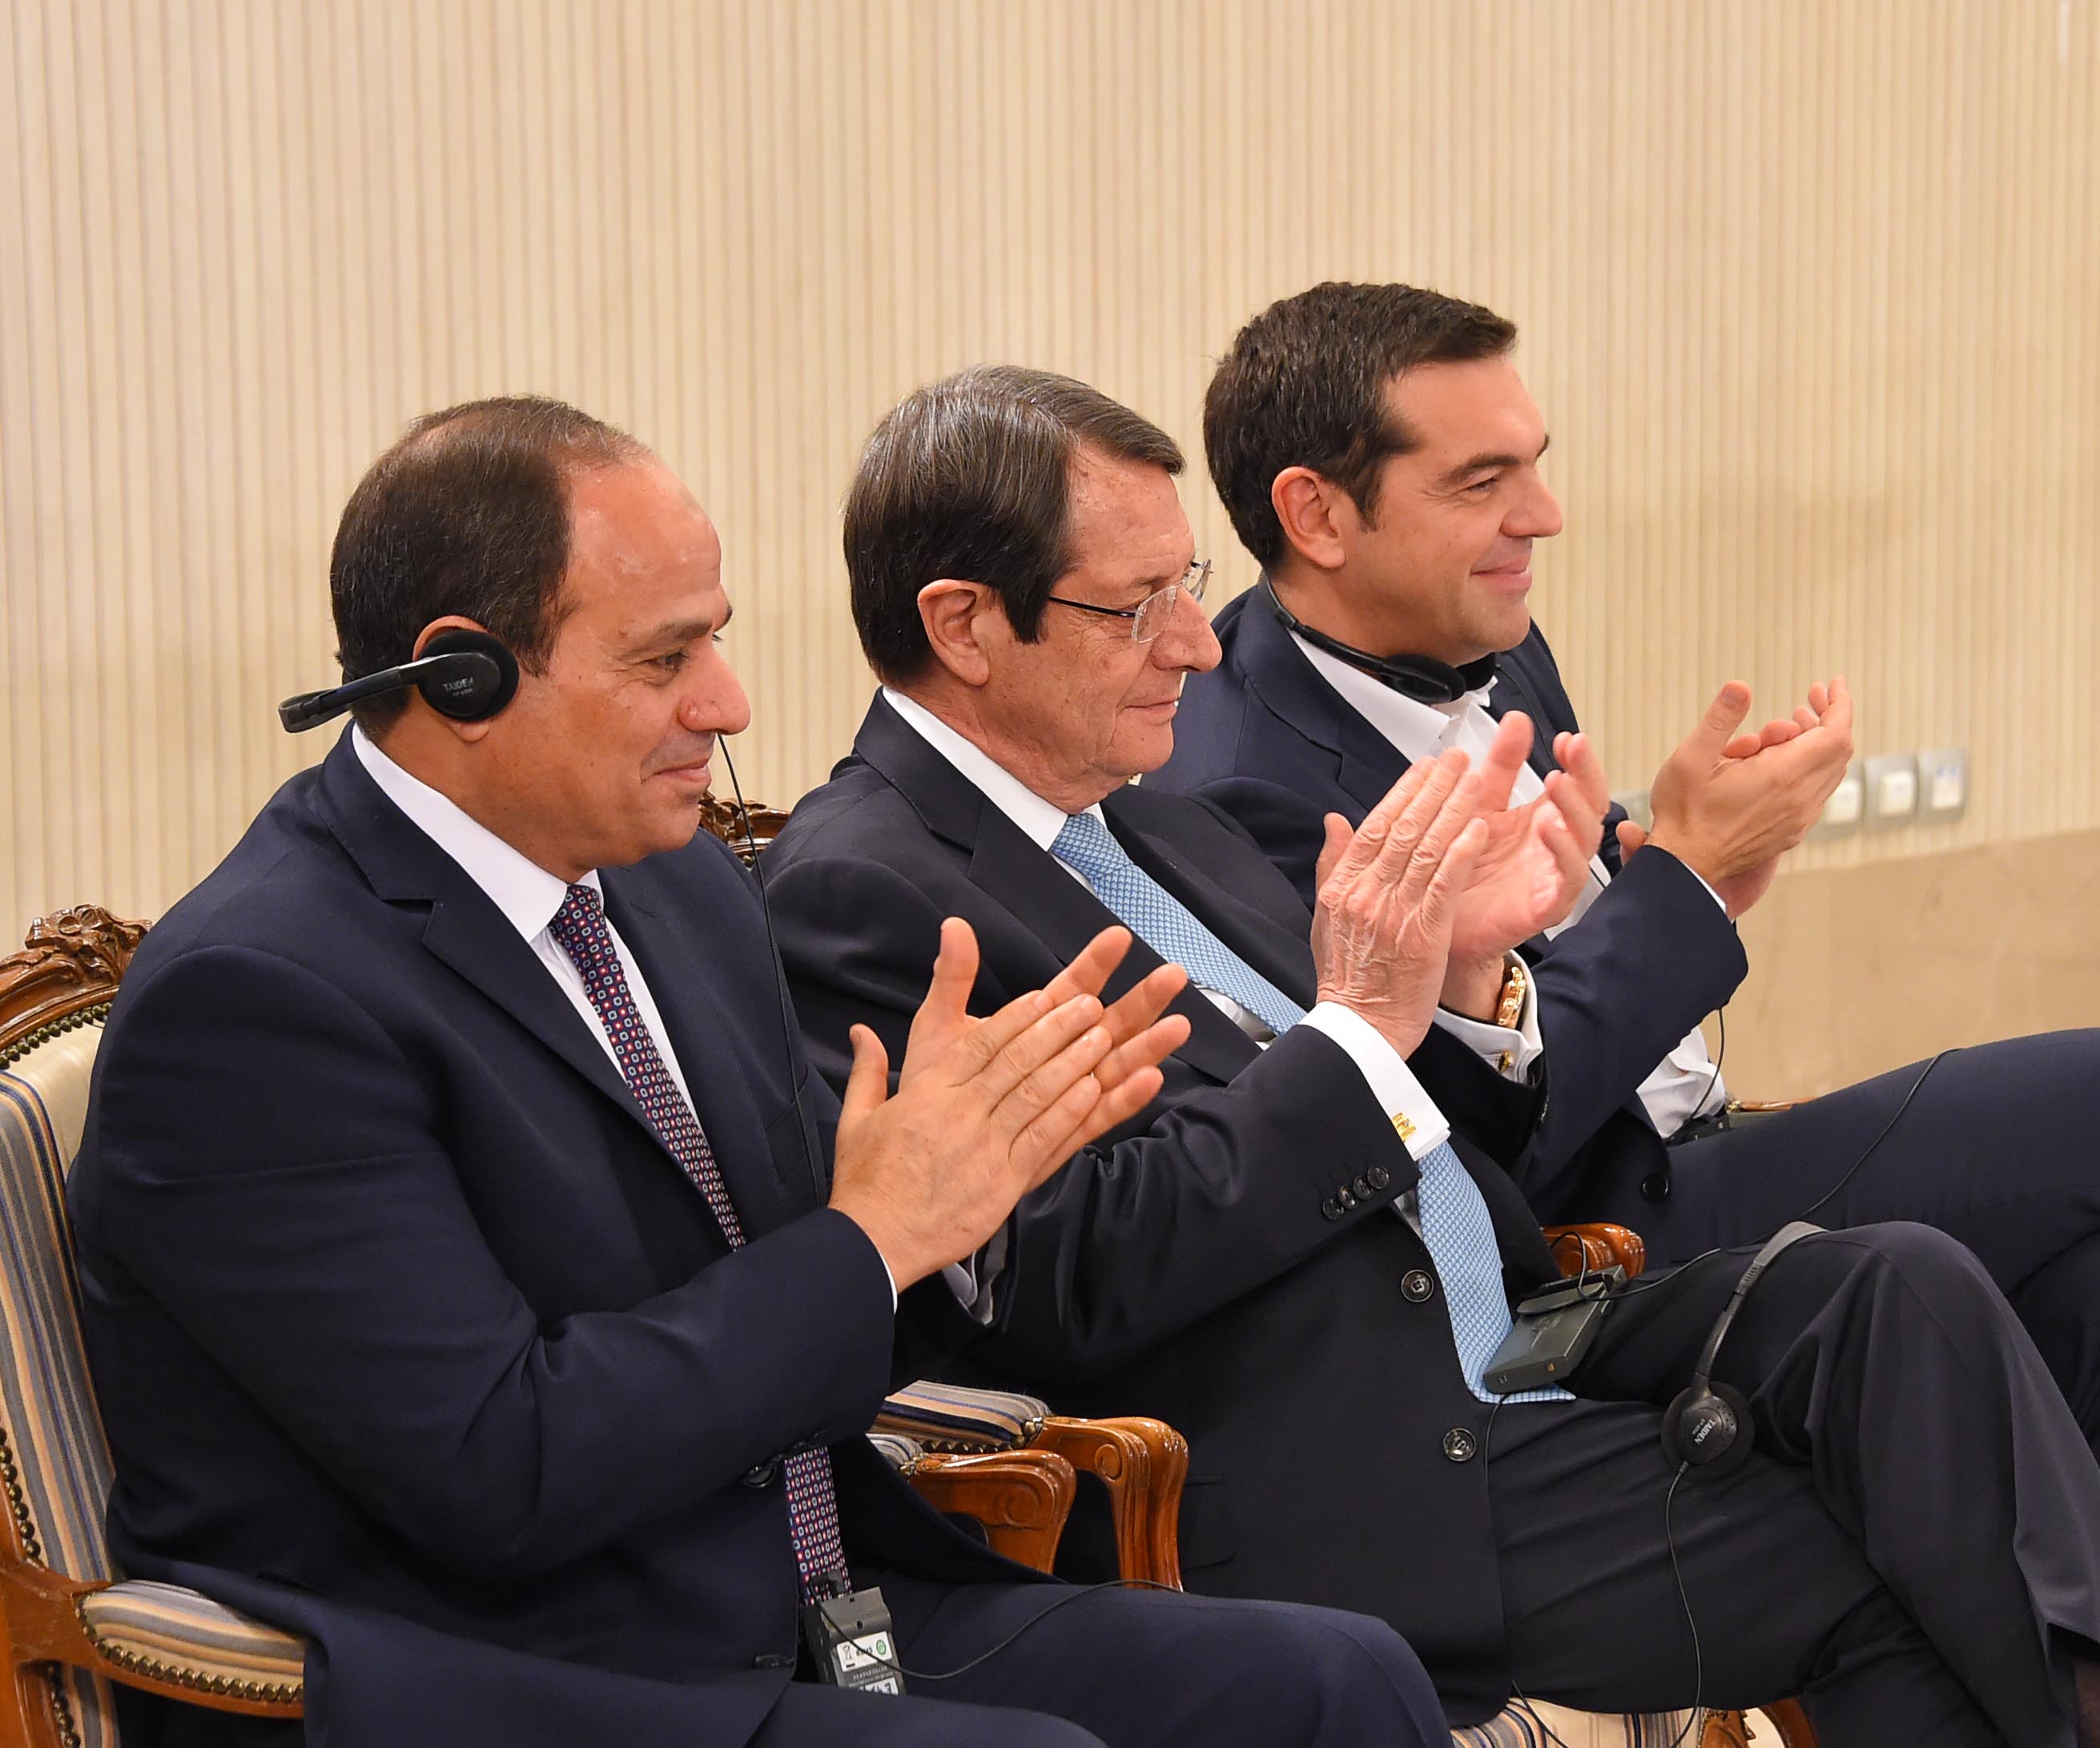 صور المؤتمر الصحفى مع زعماء قبرص واليونان (22)